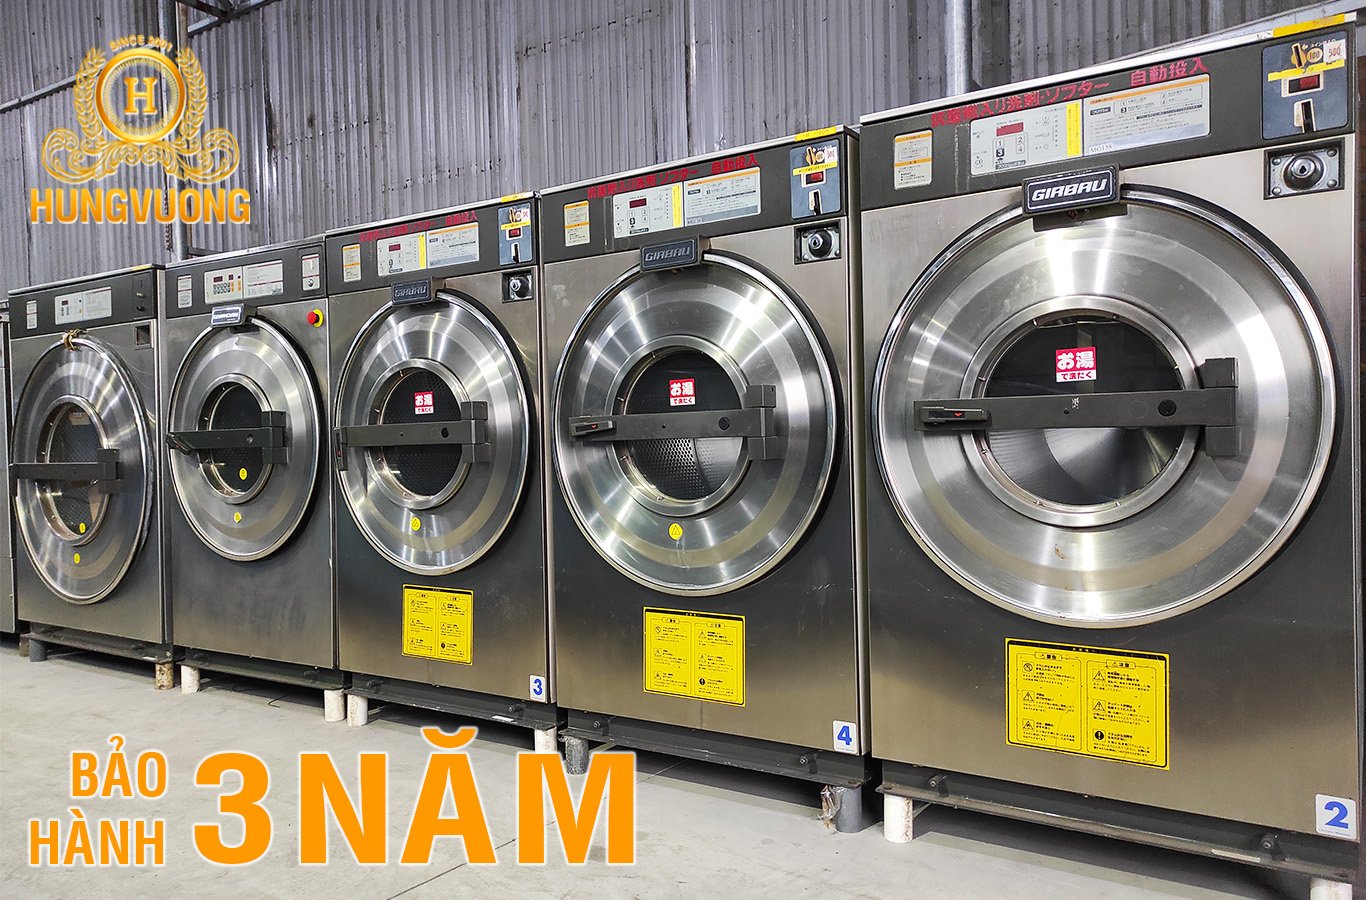 Cung cấp máy giặt vắt công nghiệp cho tiệm giặt dân sinh ở Hà Tĩnh